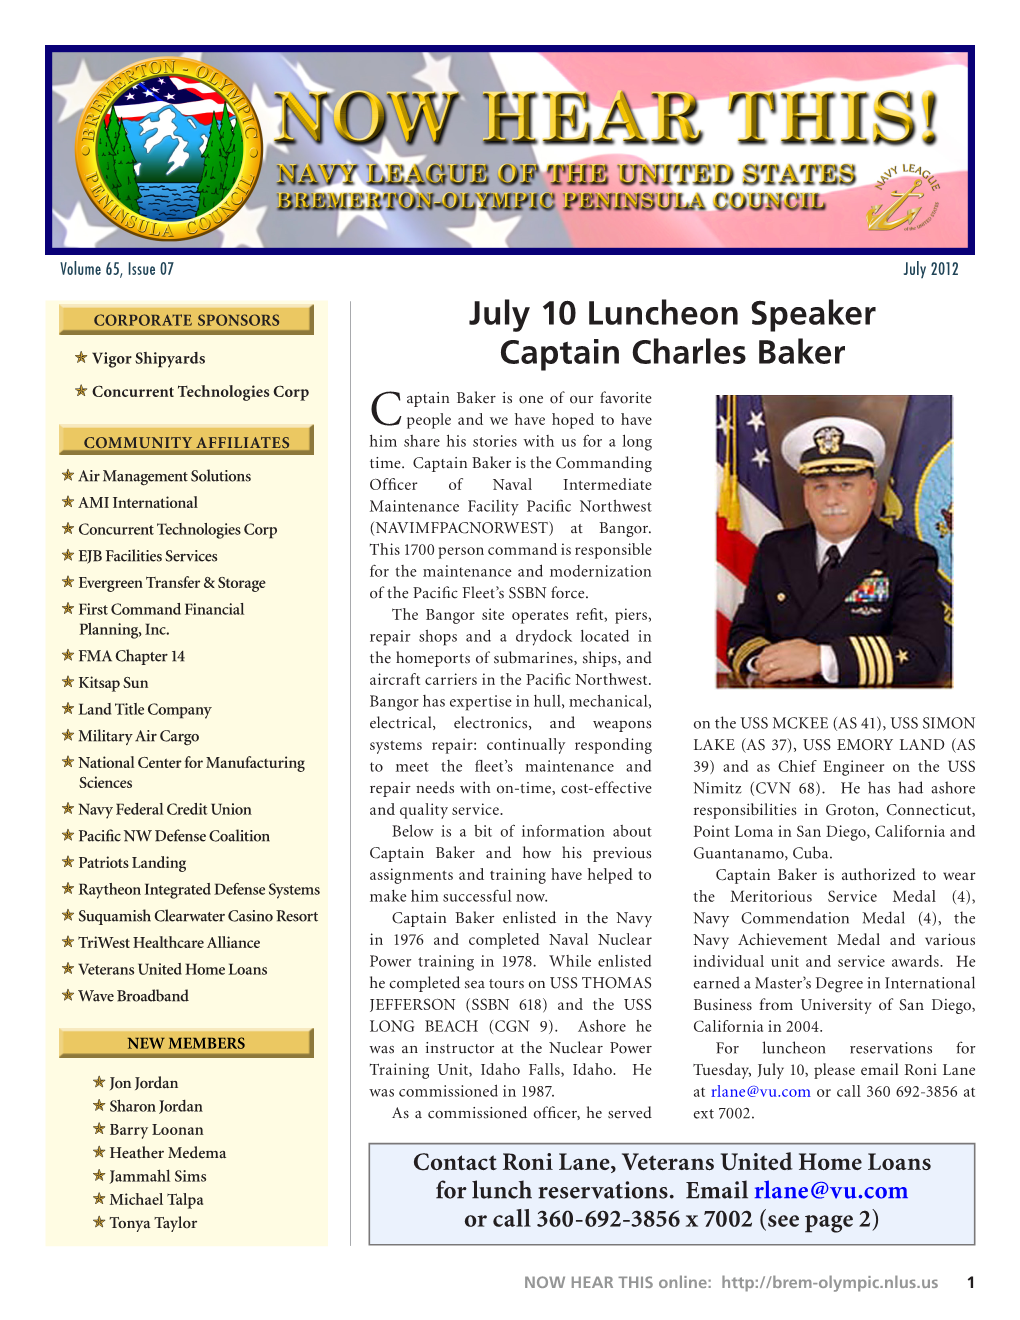 July 10 Luncheon Speaker Captain Charles Baker